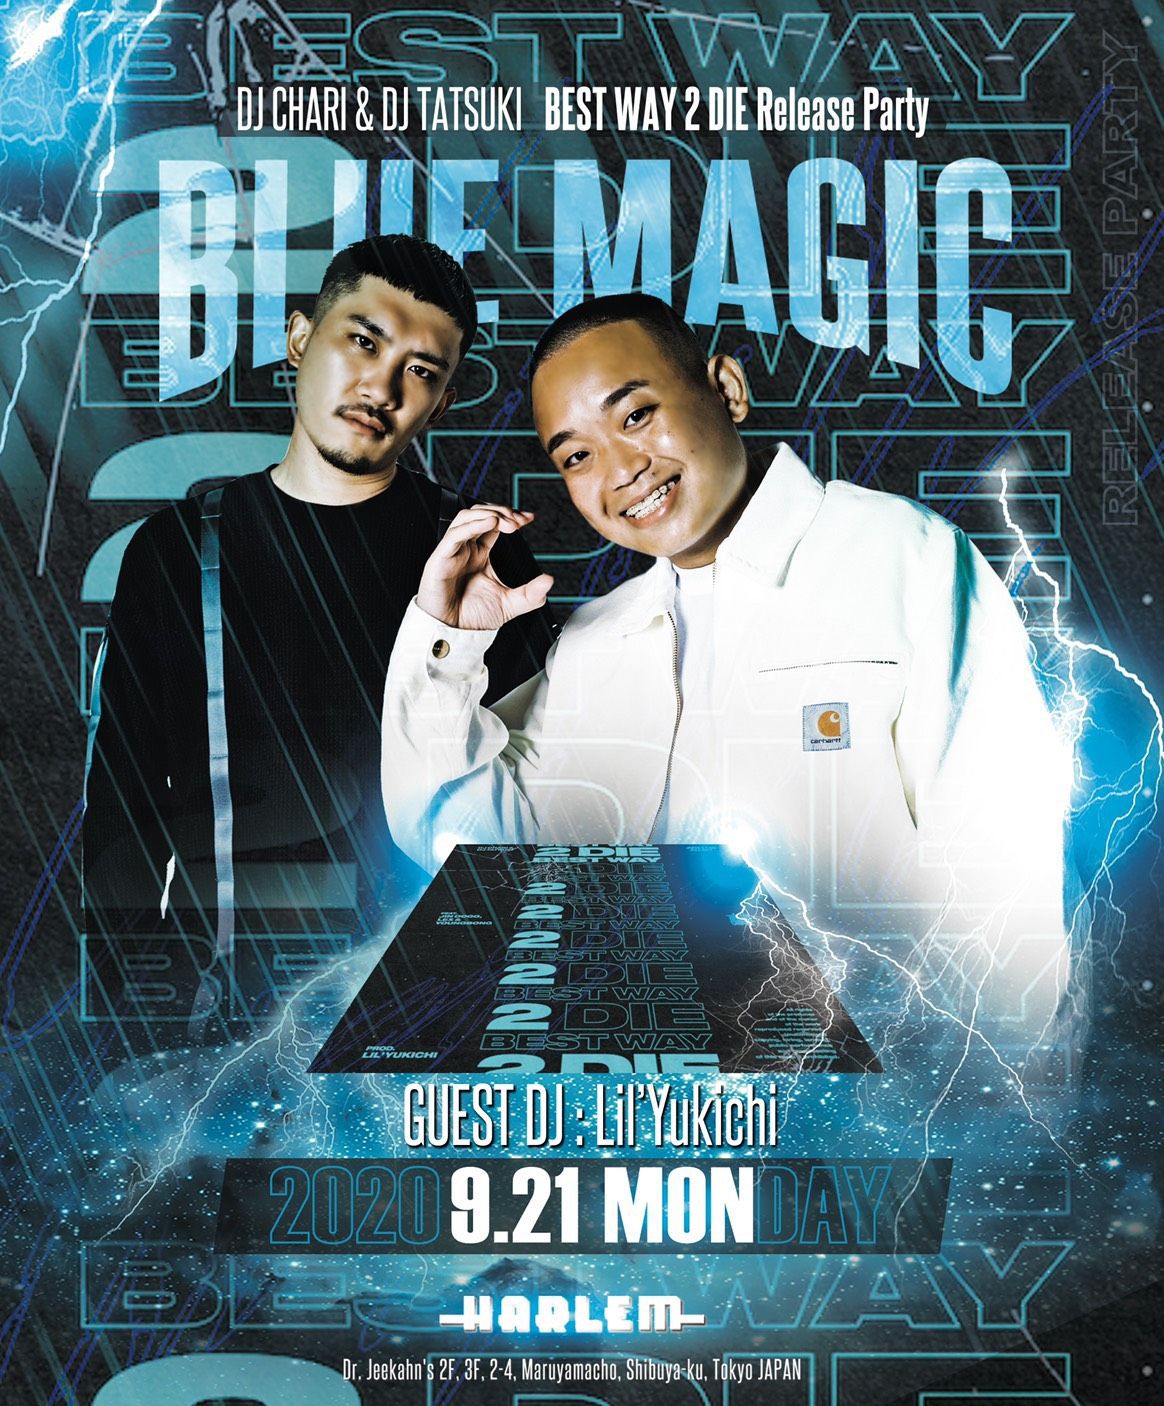 BLUE MAGIC SP DJ CHARI & DJ TATSUKI "BEST WAY 2 DIE" Release Party